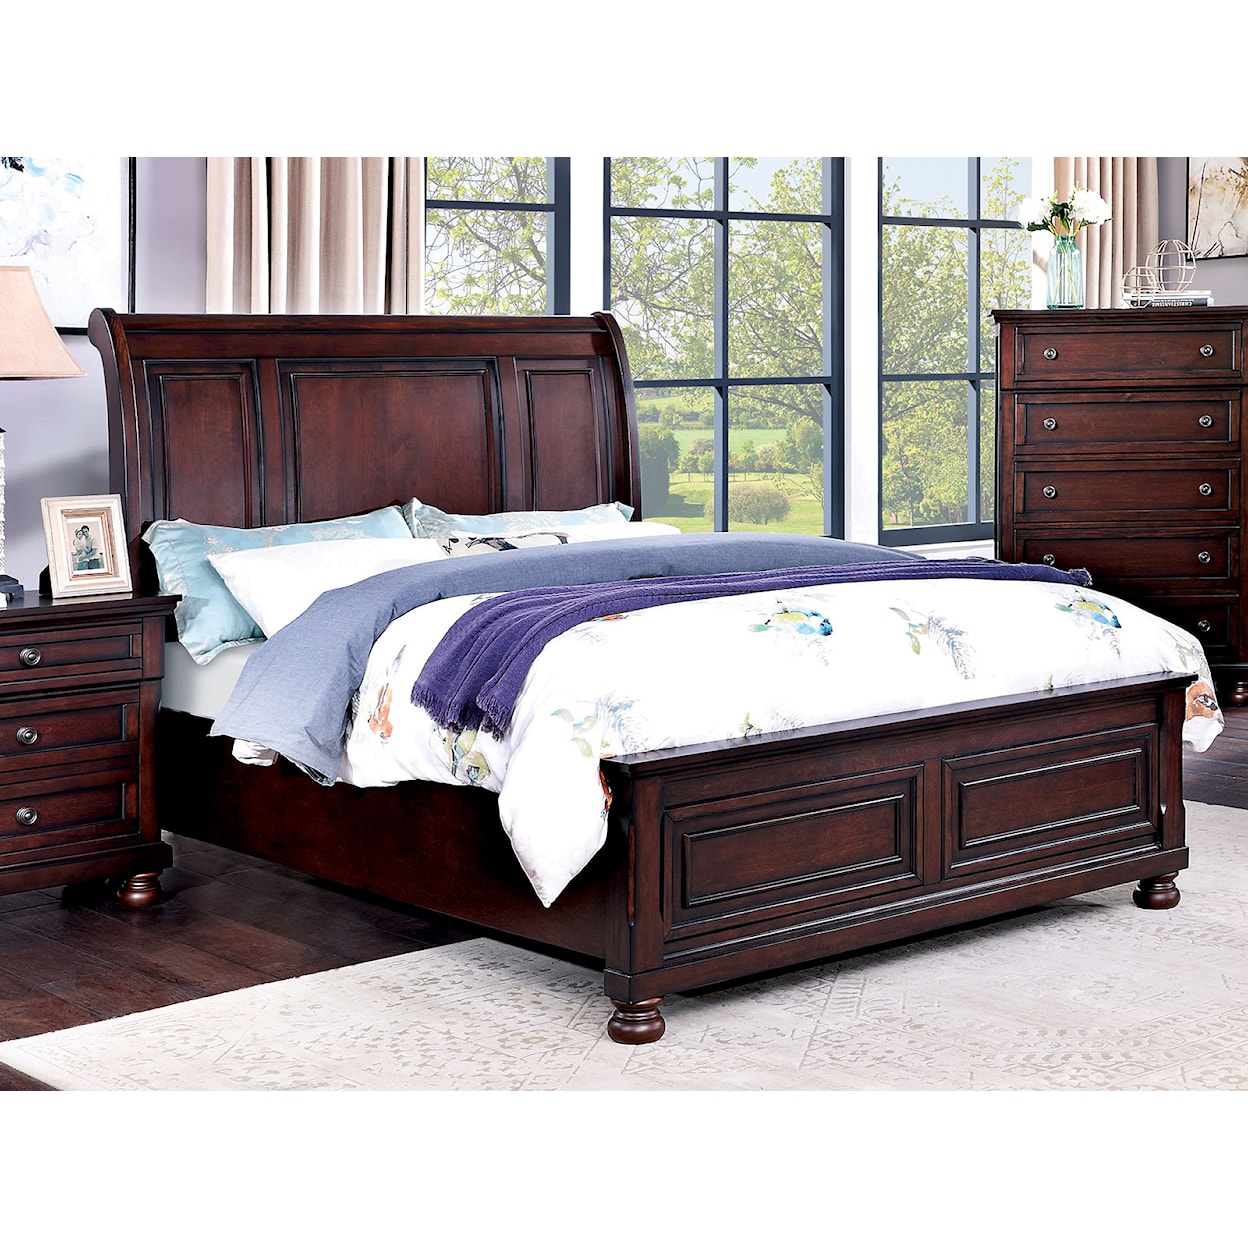 Furniture of America Wells Queen Bed